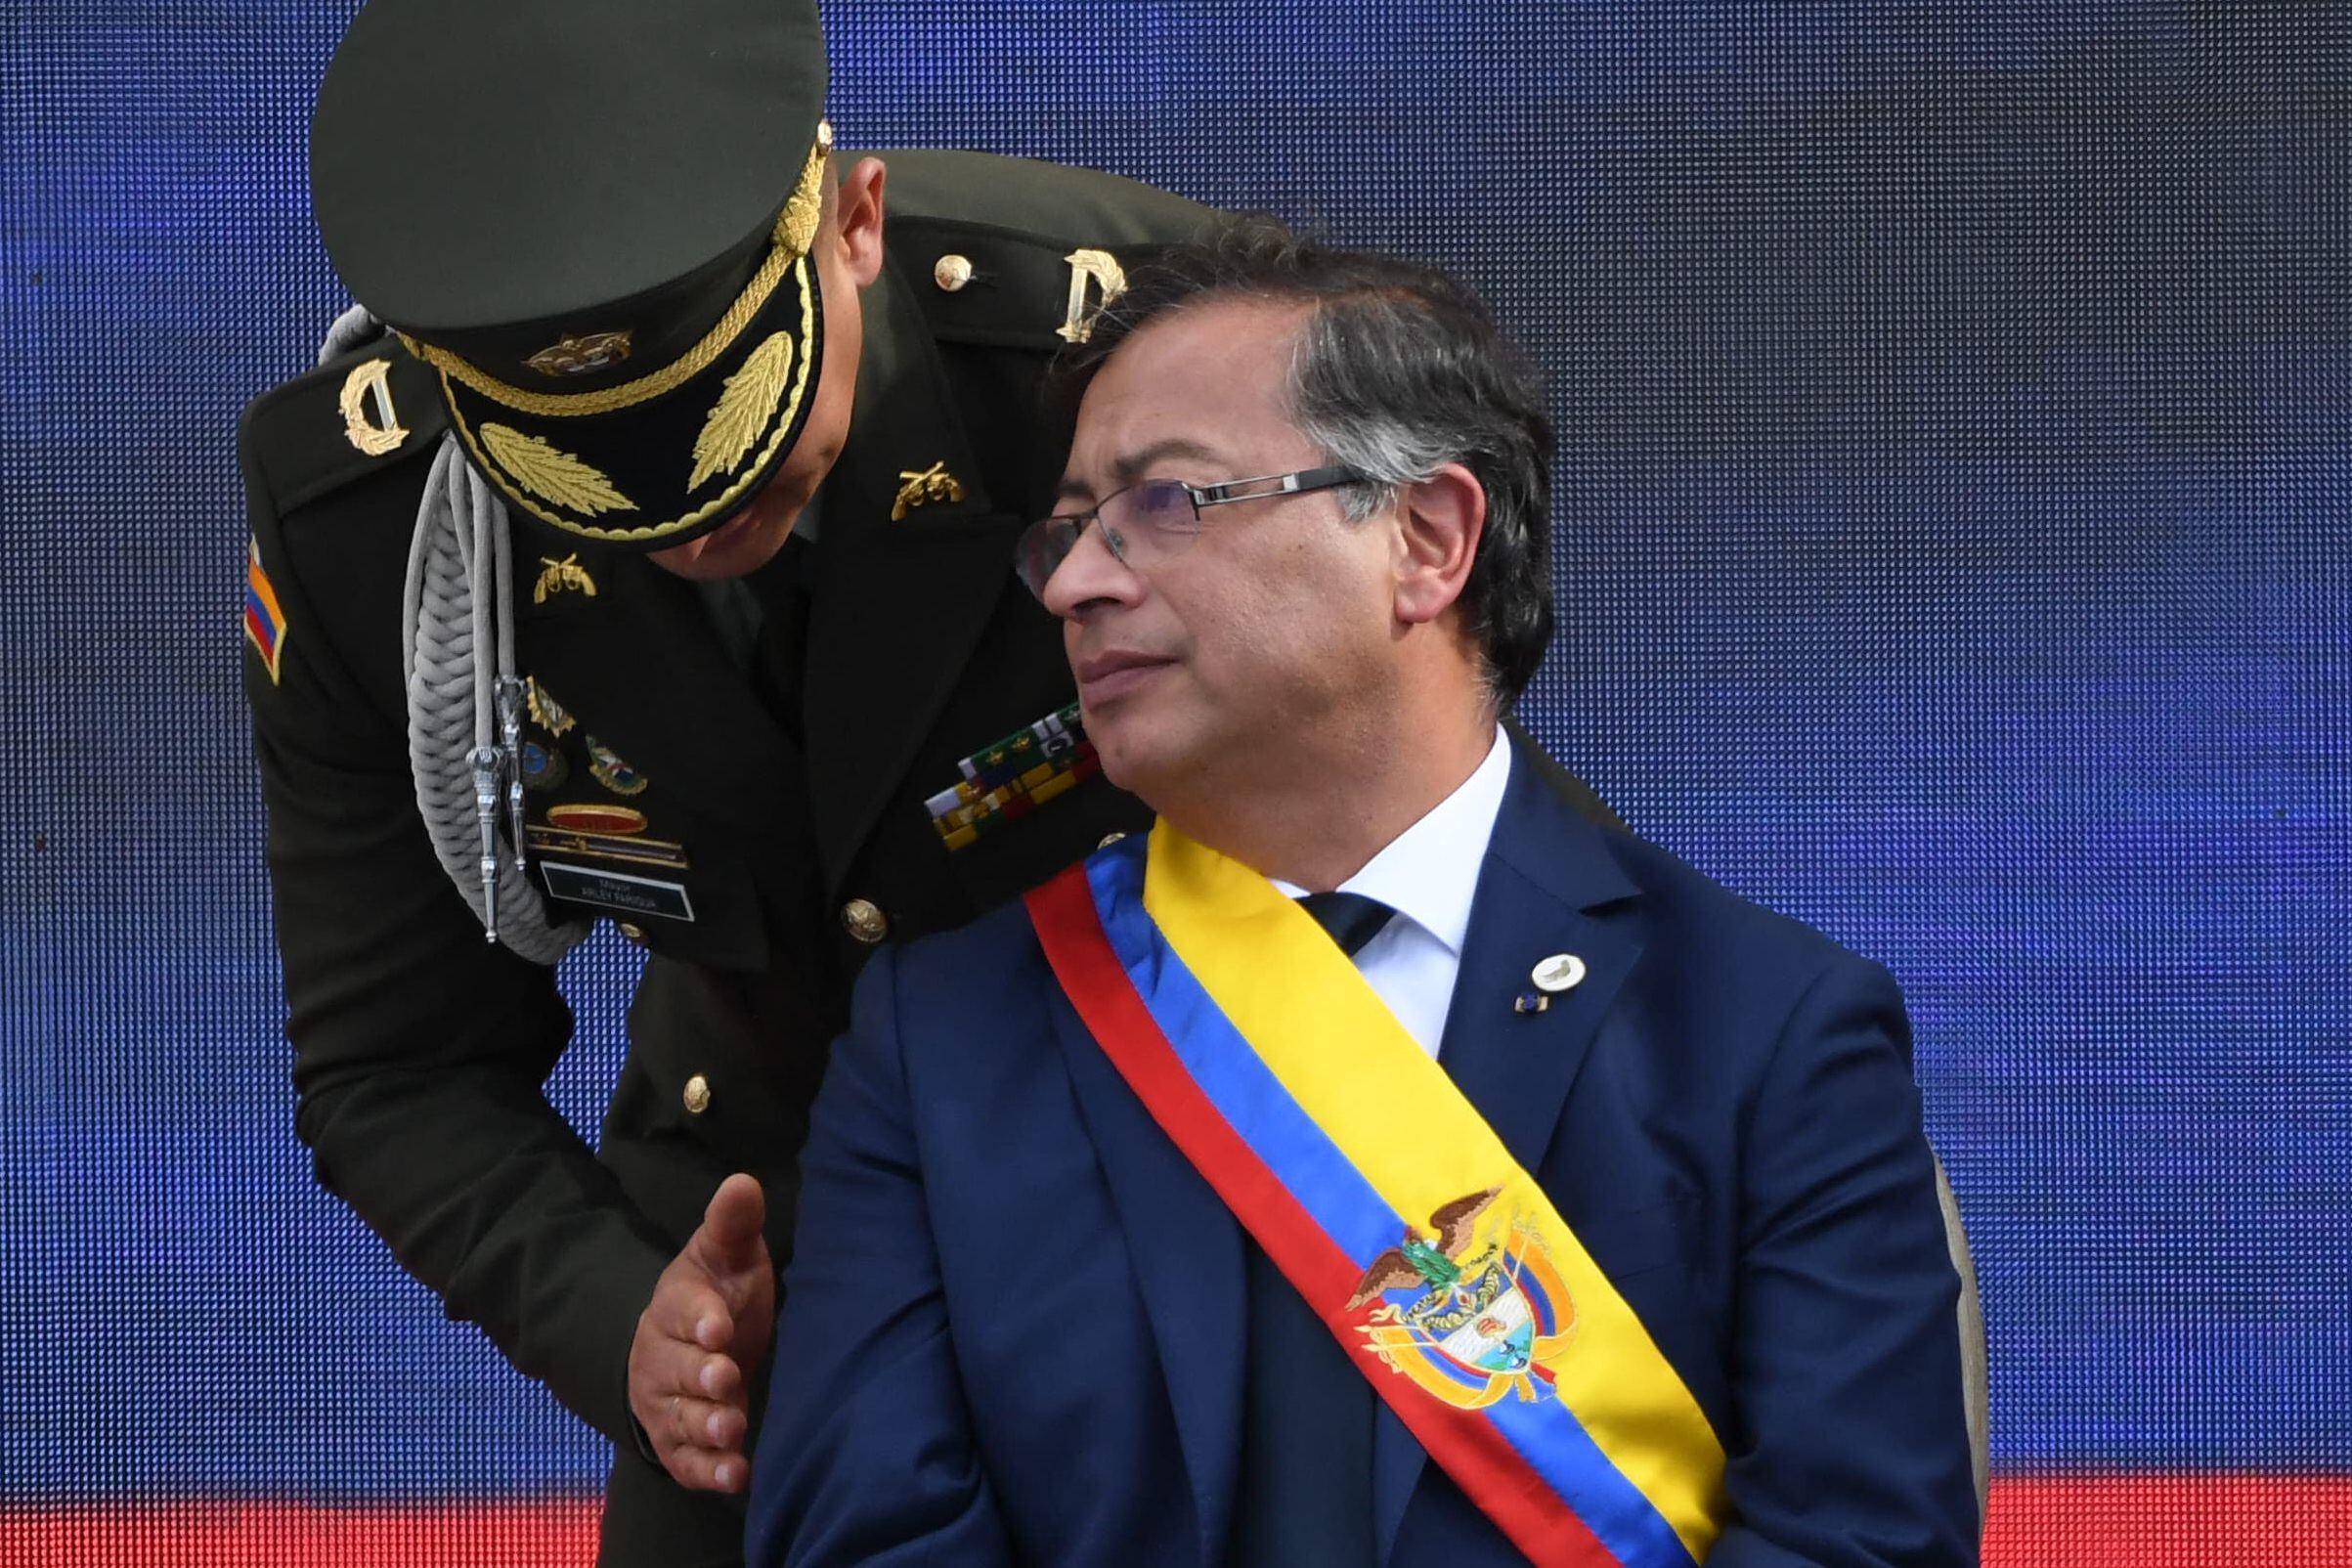 El nuevo presidente de Colombia, Gustavo Petro, escucha al alcalde de la Policía de Colombia, Arley Farigua, durante la ceremonia de toma de posesión en la plaza Bolívar de Bogotá, el 7 de agosto de 2022. Foto AFP